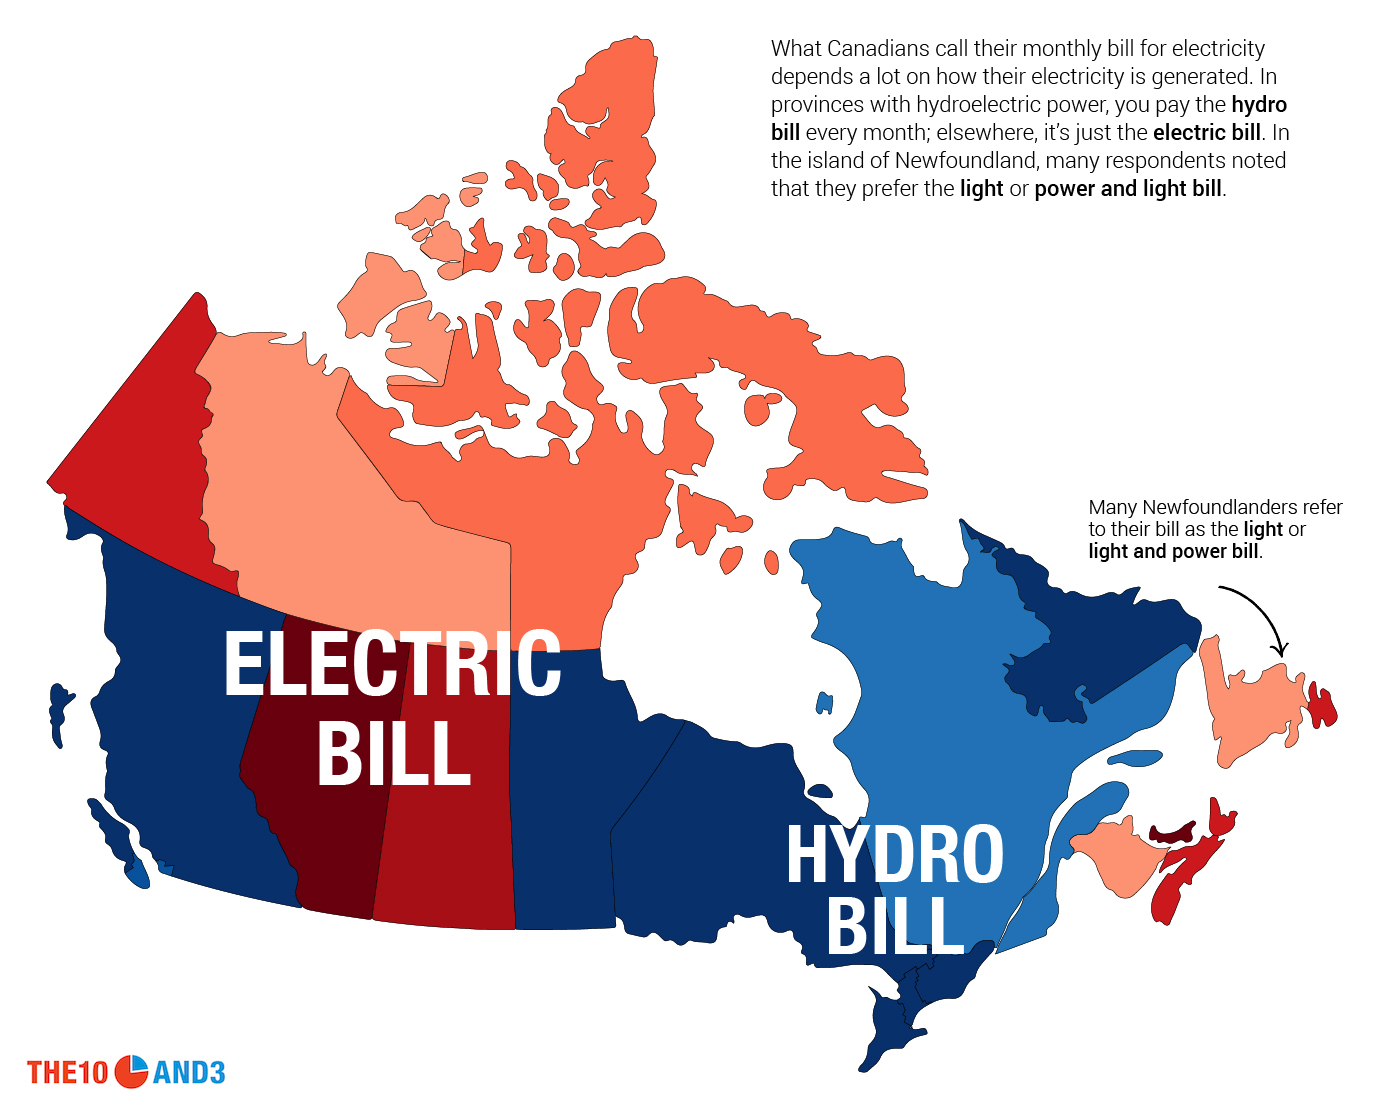 Electric Pill vs. Hydro Bill